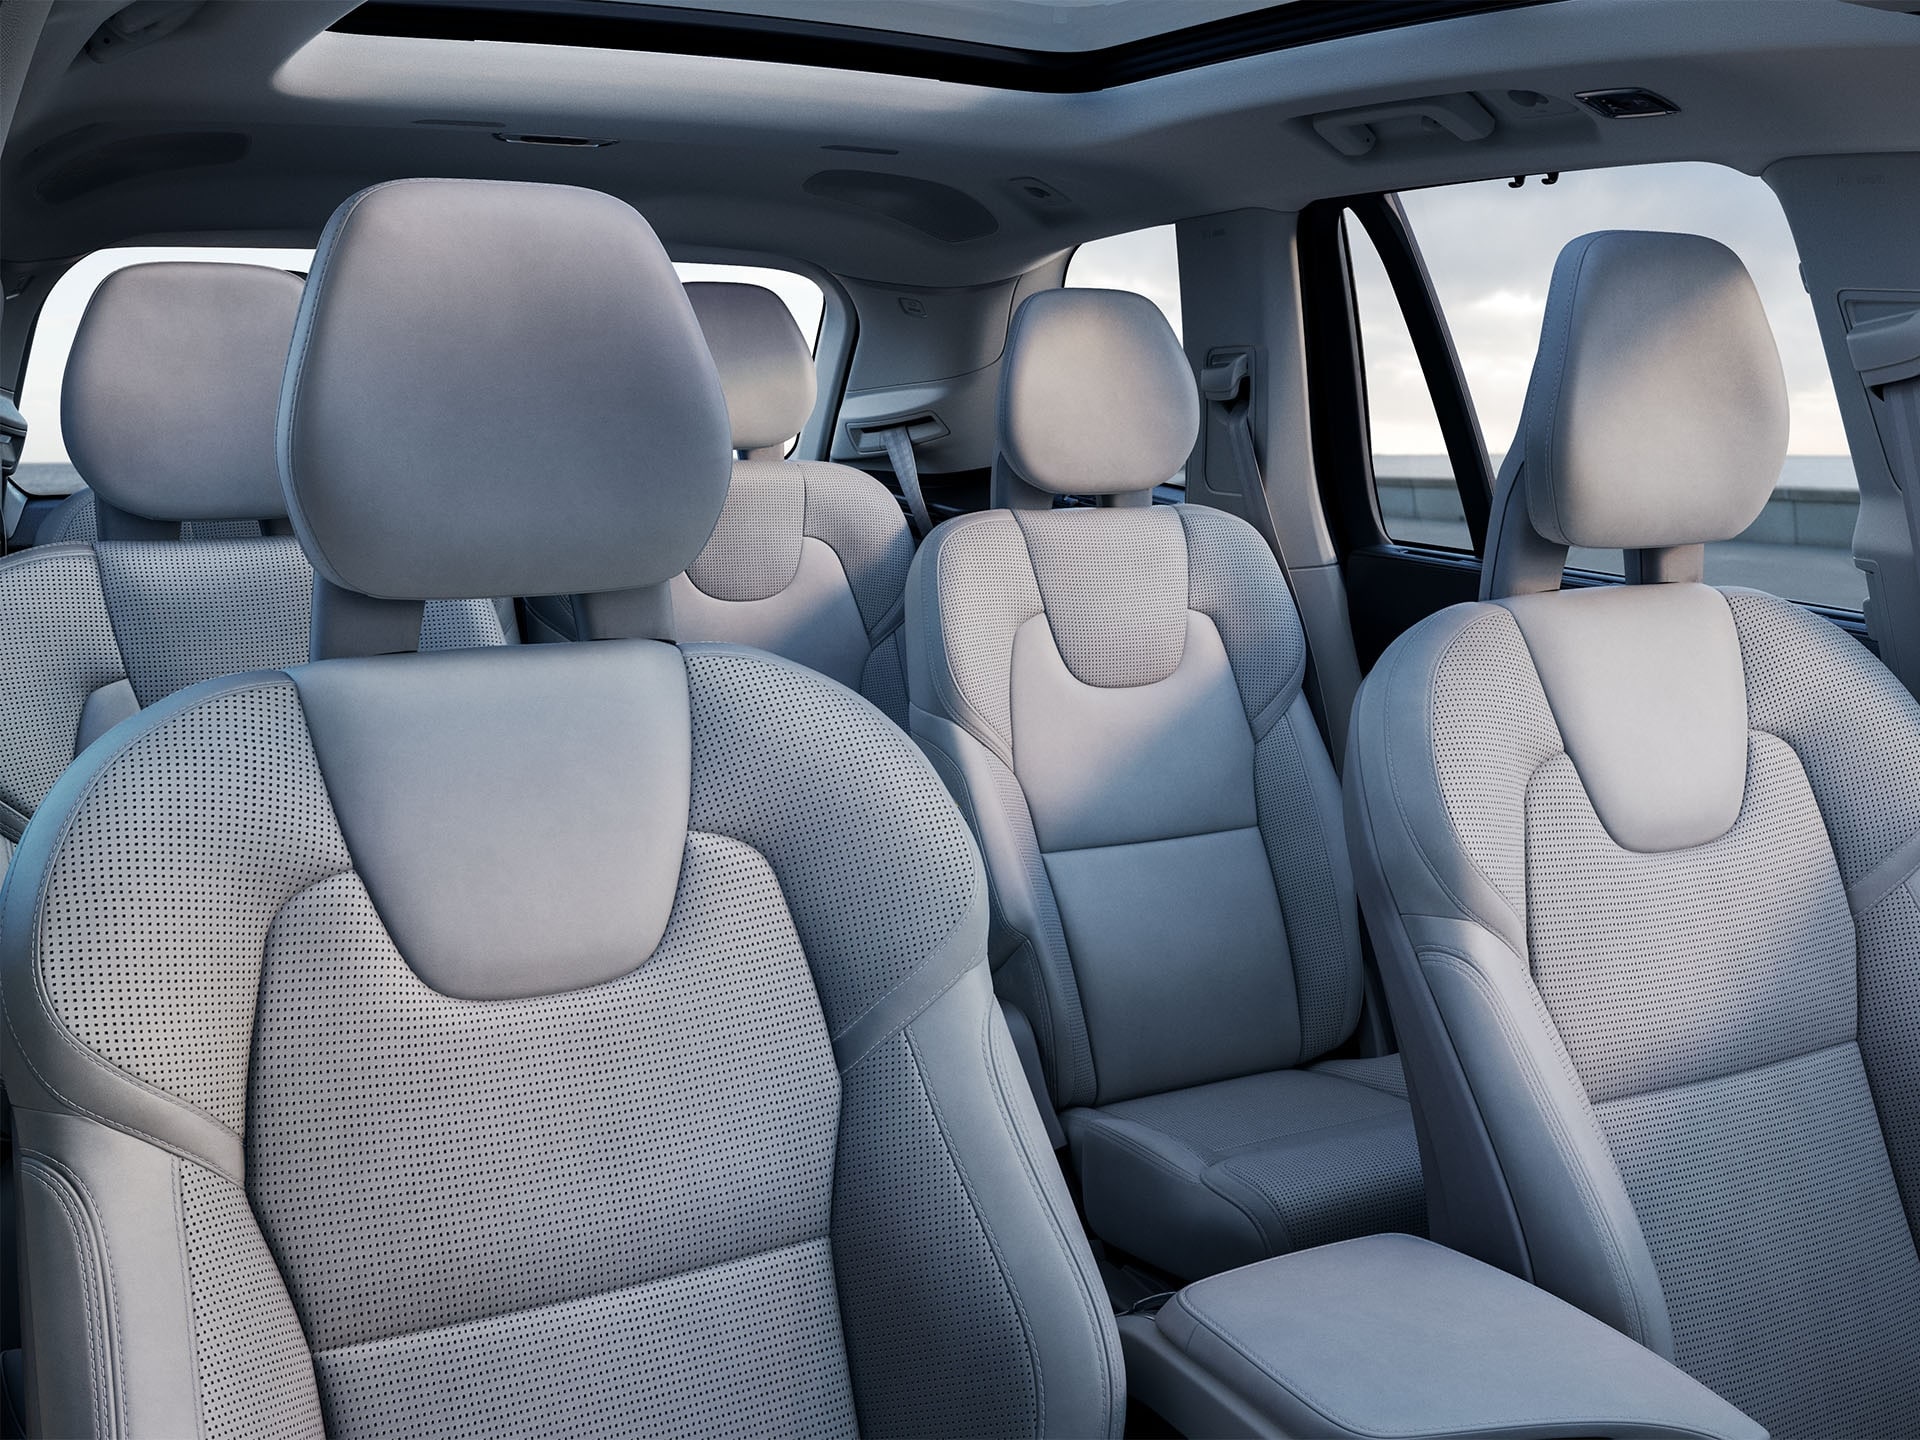 Pohled do světlého interiéru SUV Volvo se třemi řadami sedadel